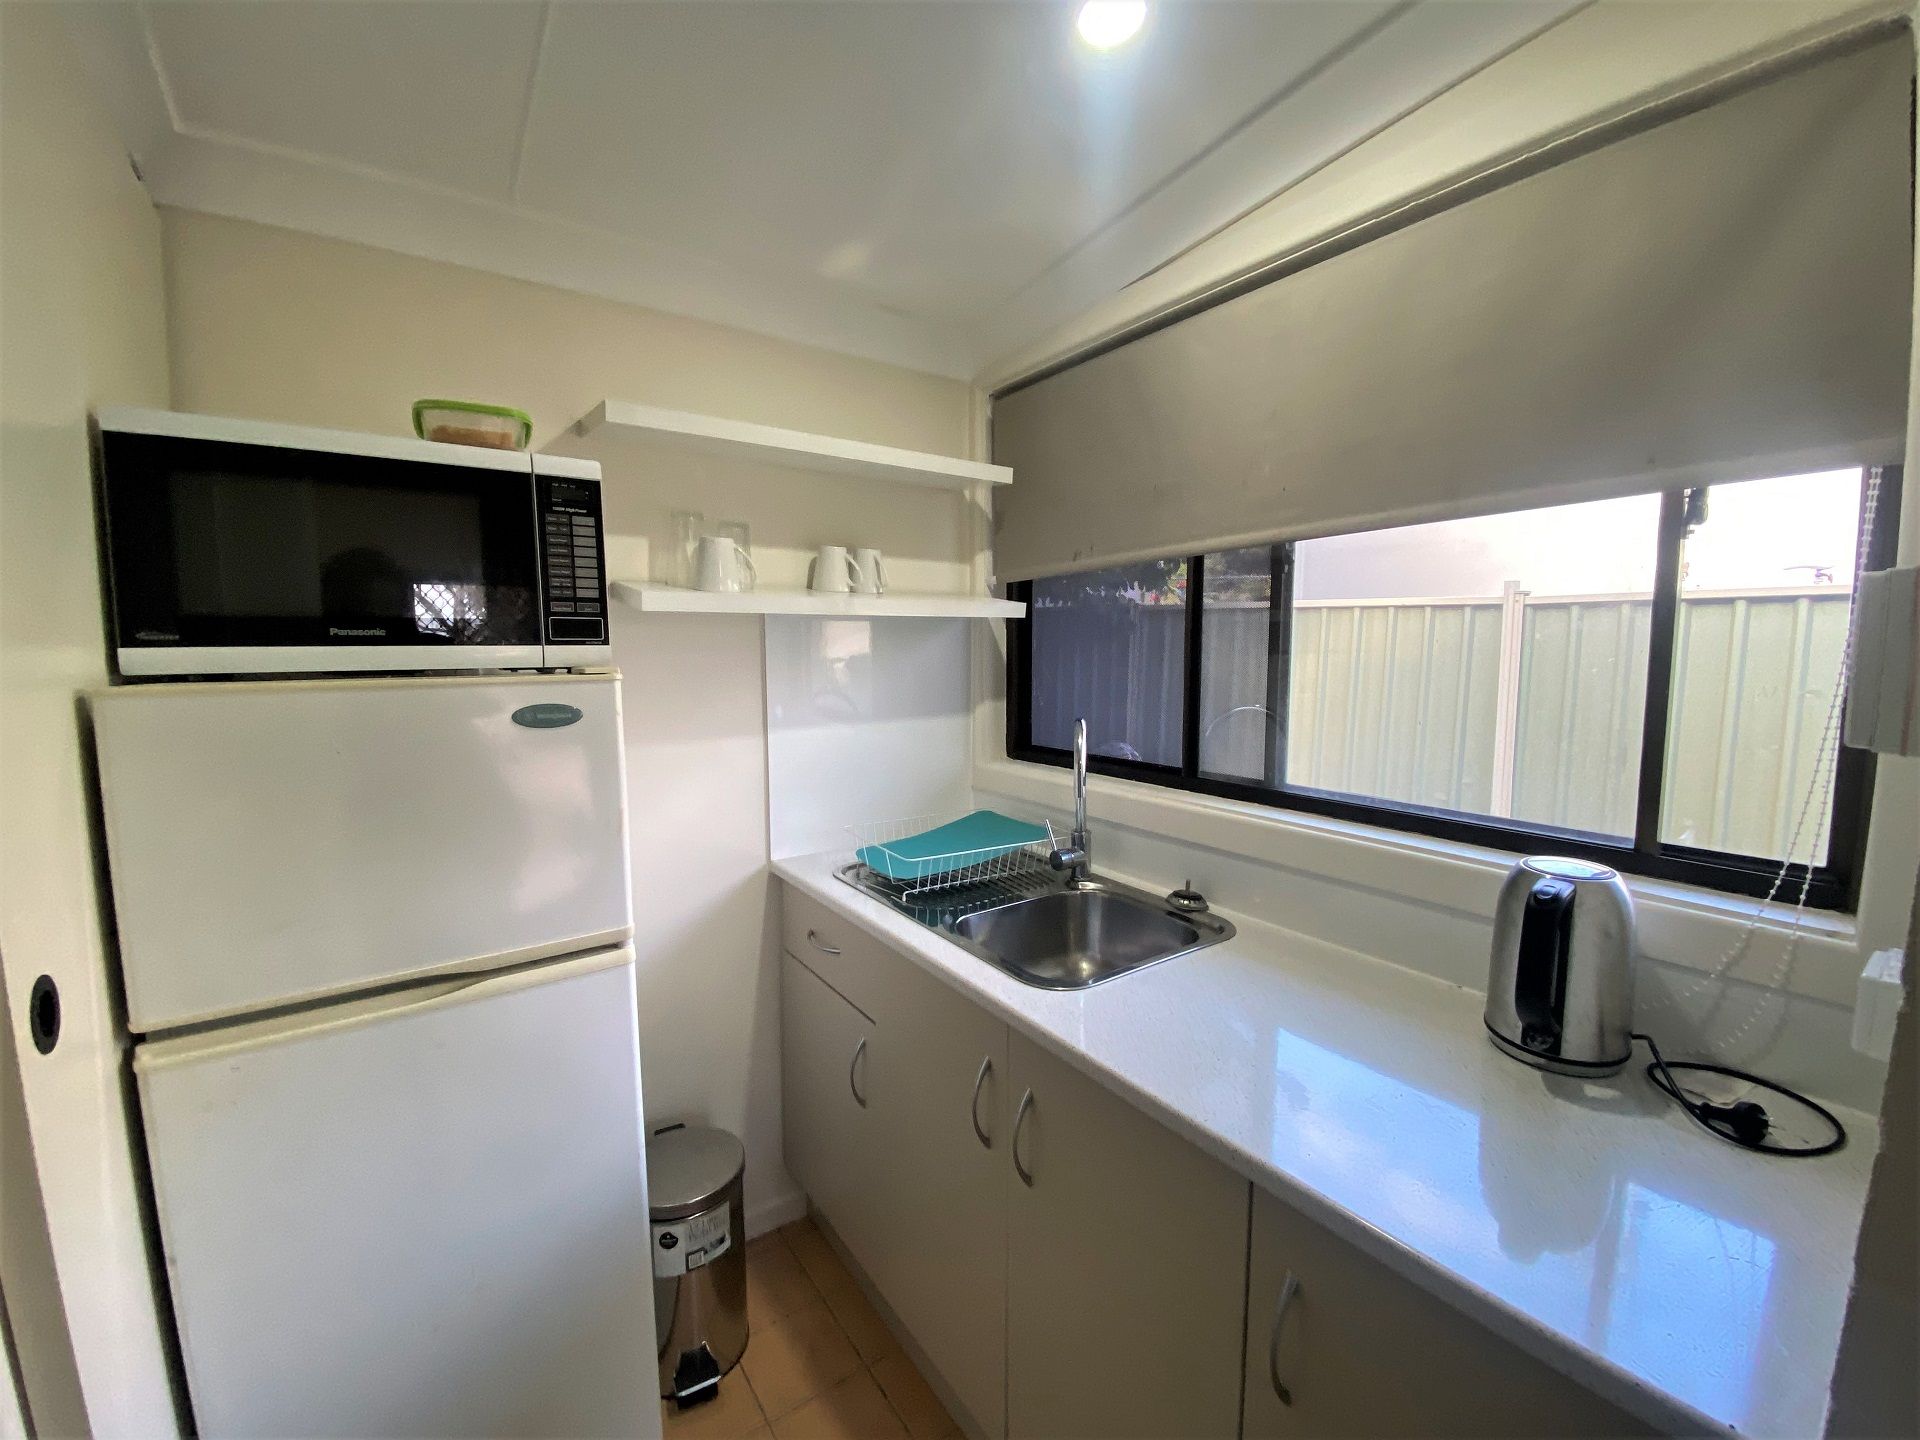 Nambucca Heads Real Estate: Bedsit accommodation